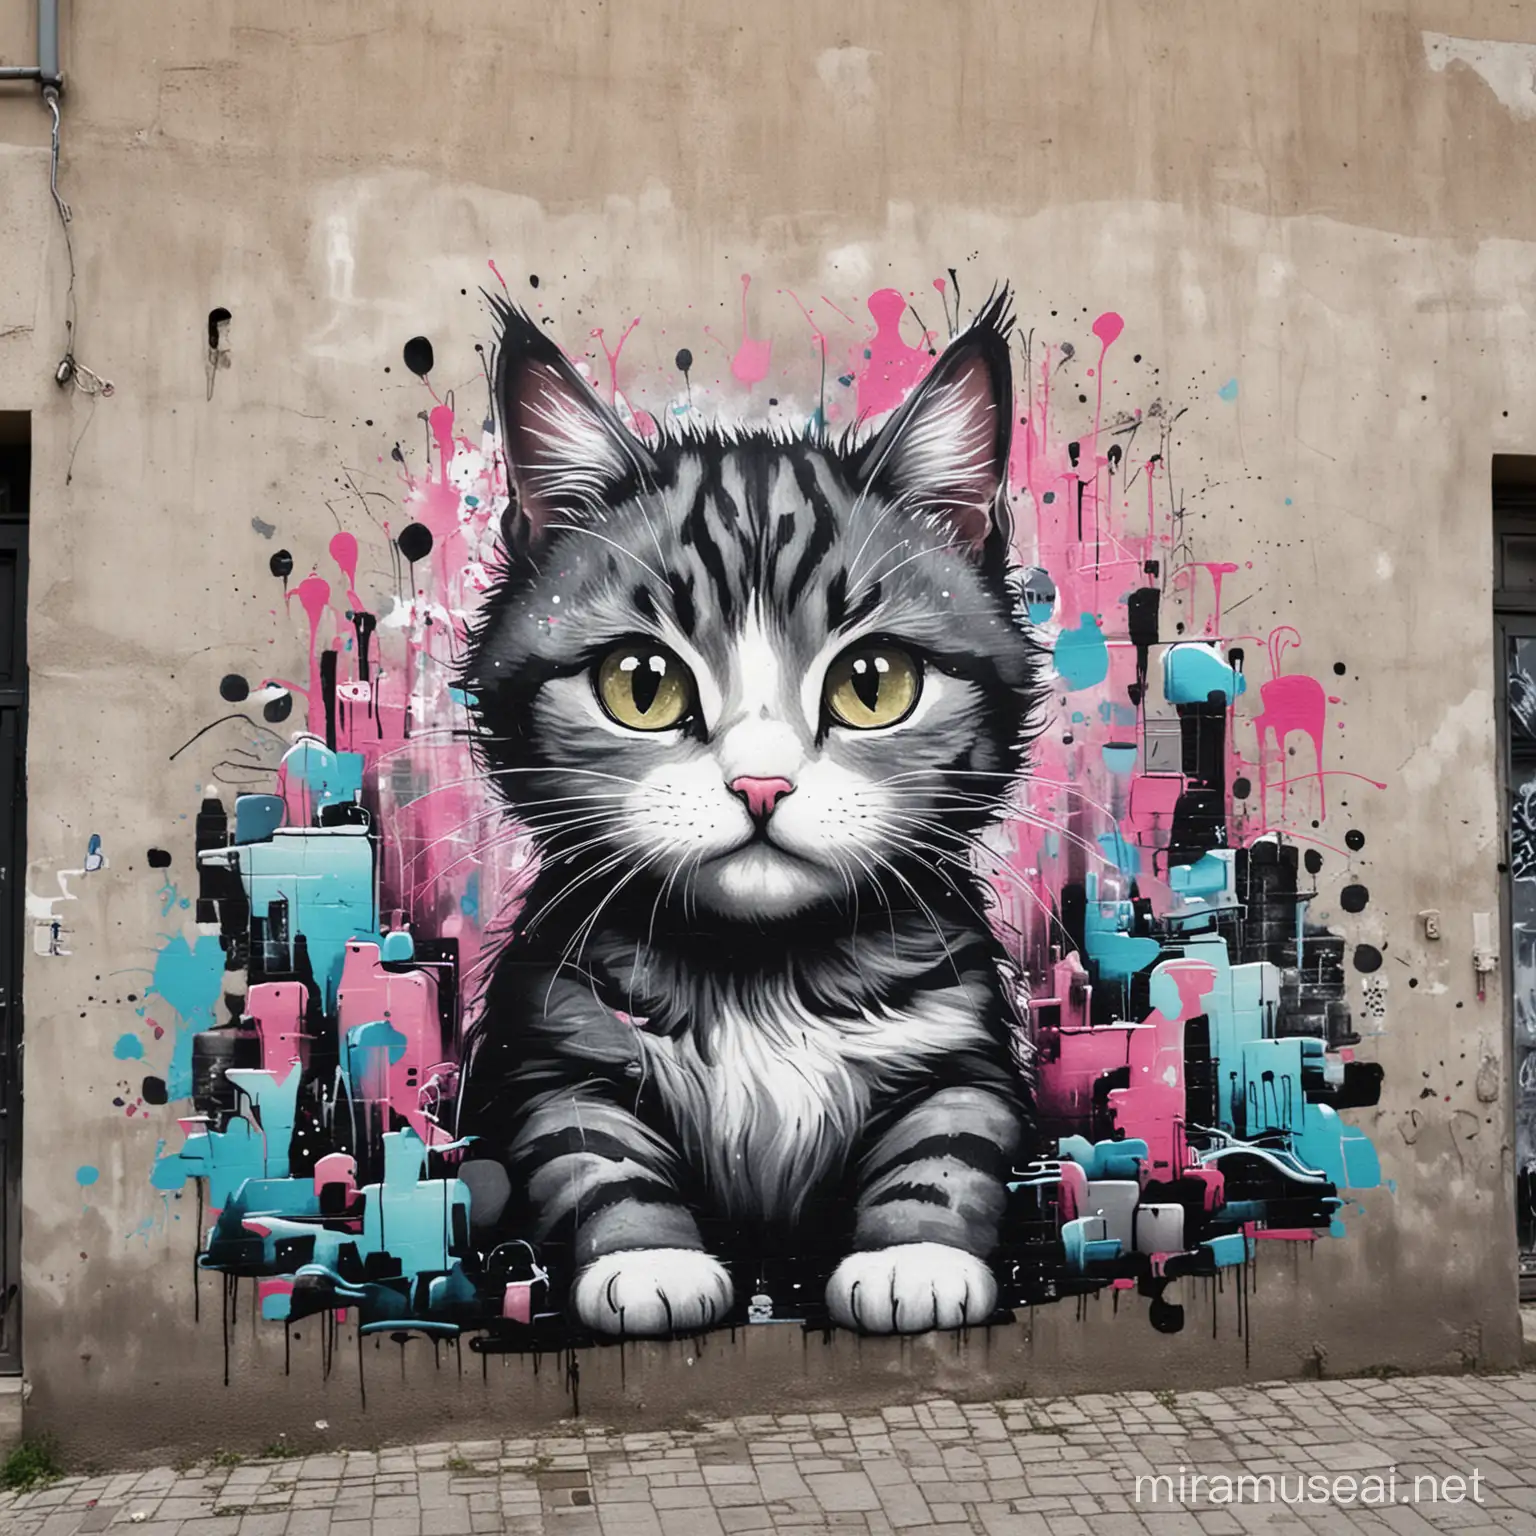 Art graffiti with Cat
